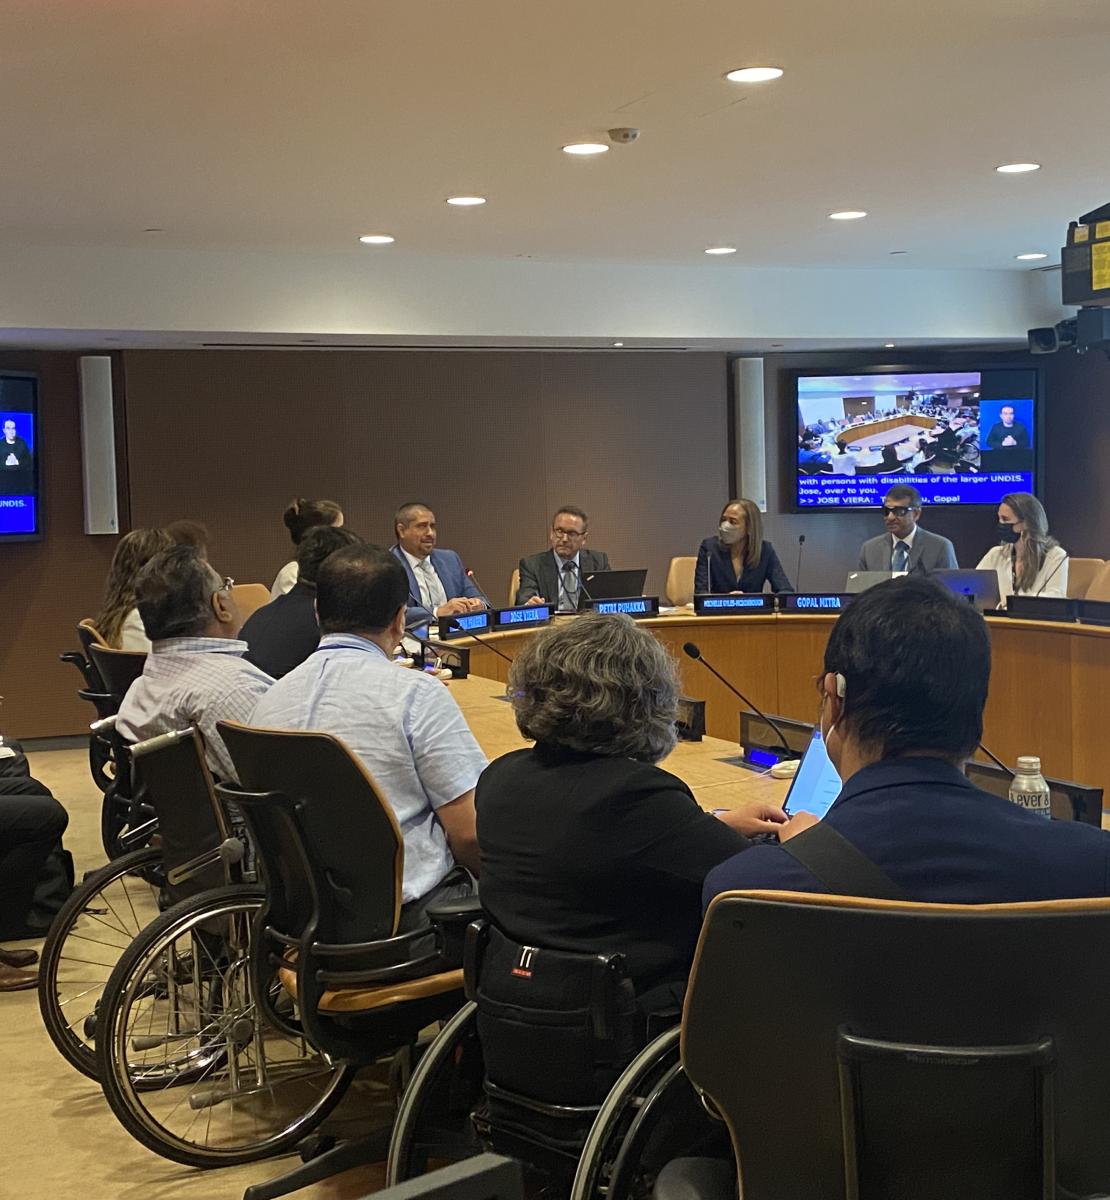 أعضاء اللجنة يجتمعون في مقر الأمم المتحدة في نيويورك لمناقشة تنفيذ استراتيجية الأمم المتحدة لإدماج منظور الإعاقة.